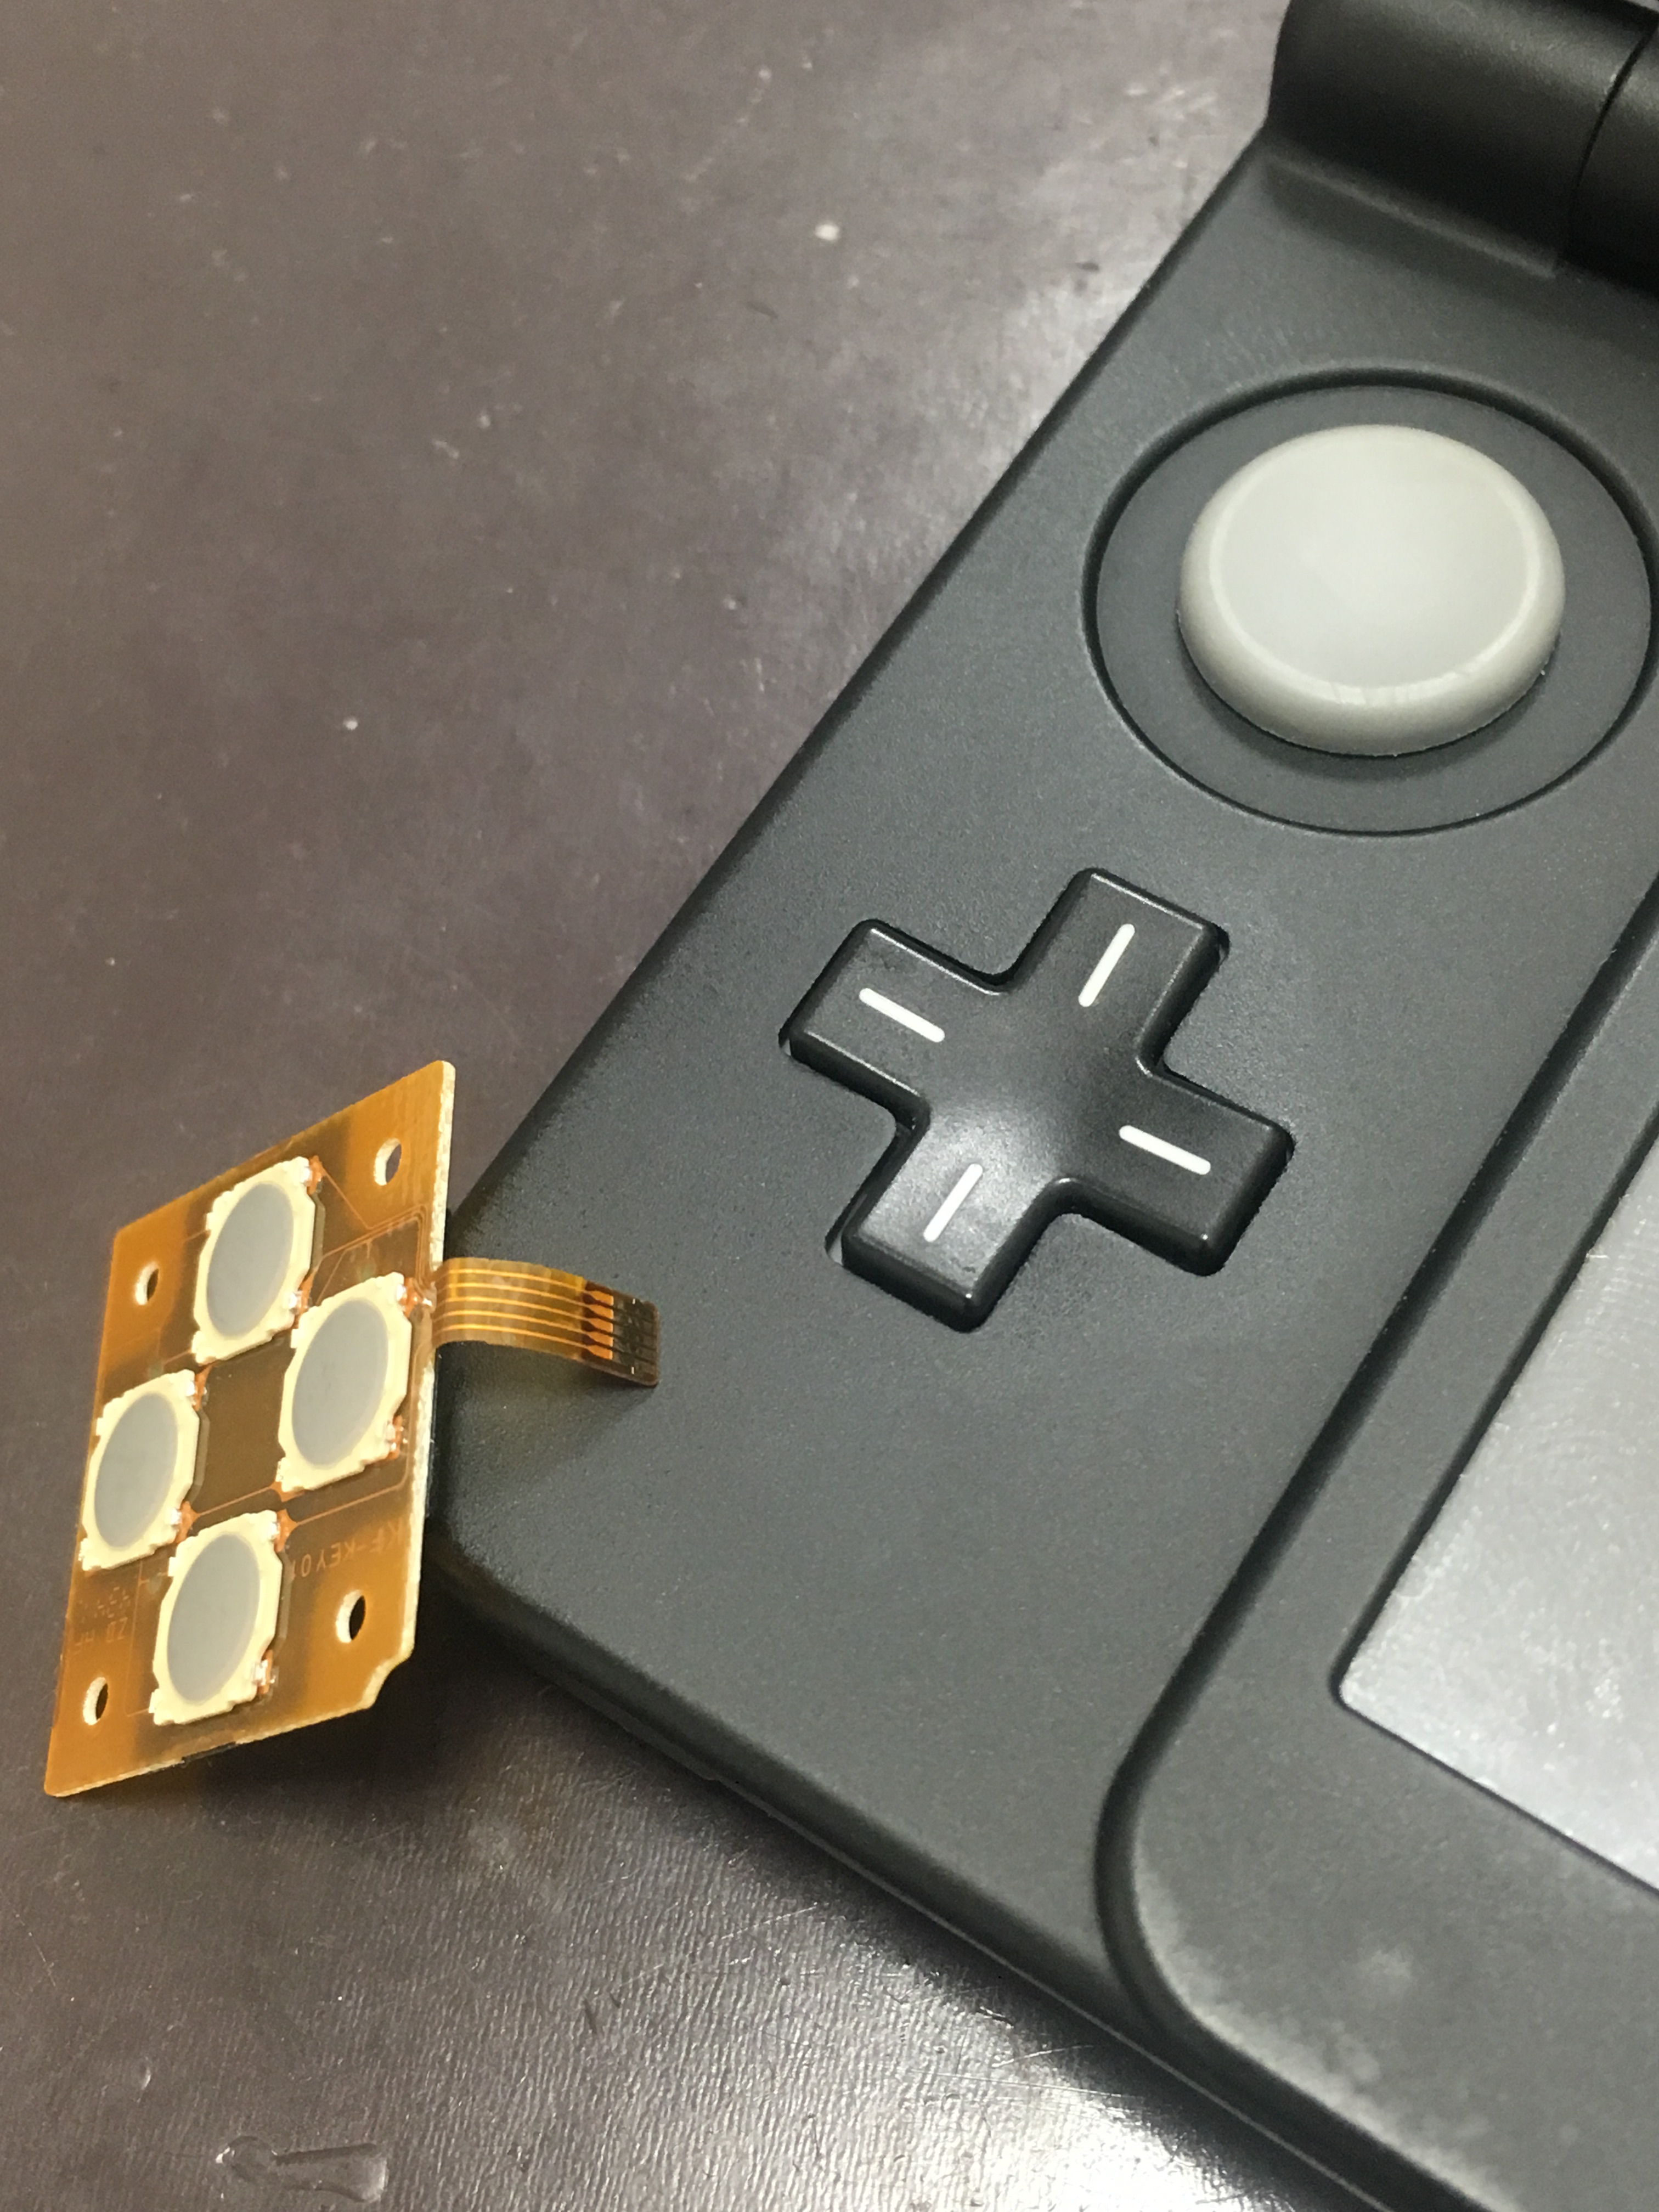 New3dsの十字キーがおかしなことに Switch Nintendo3ds Psp 修理のゲームホスピタル Switch Nintendo3ds ニンテンドーds Psp 修理